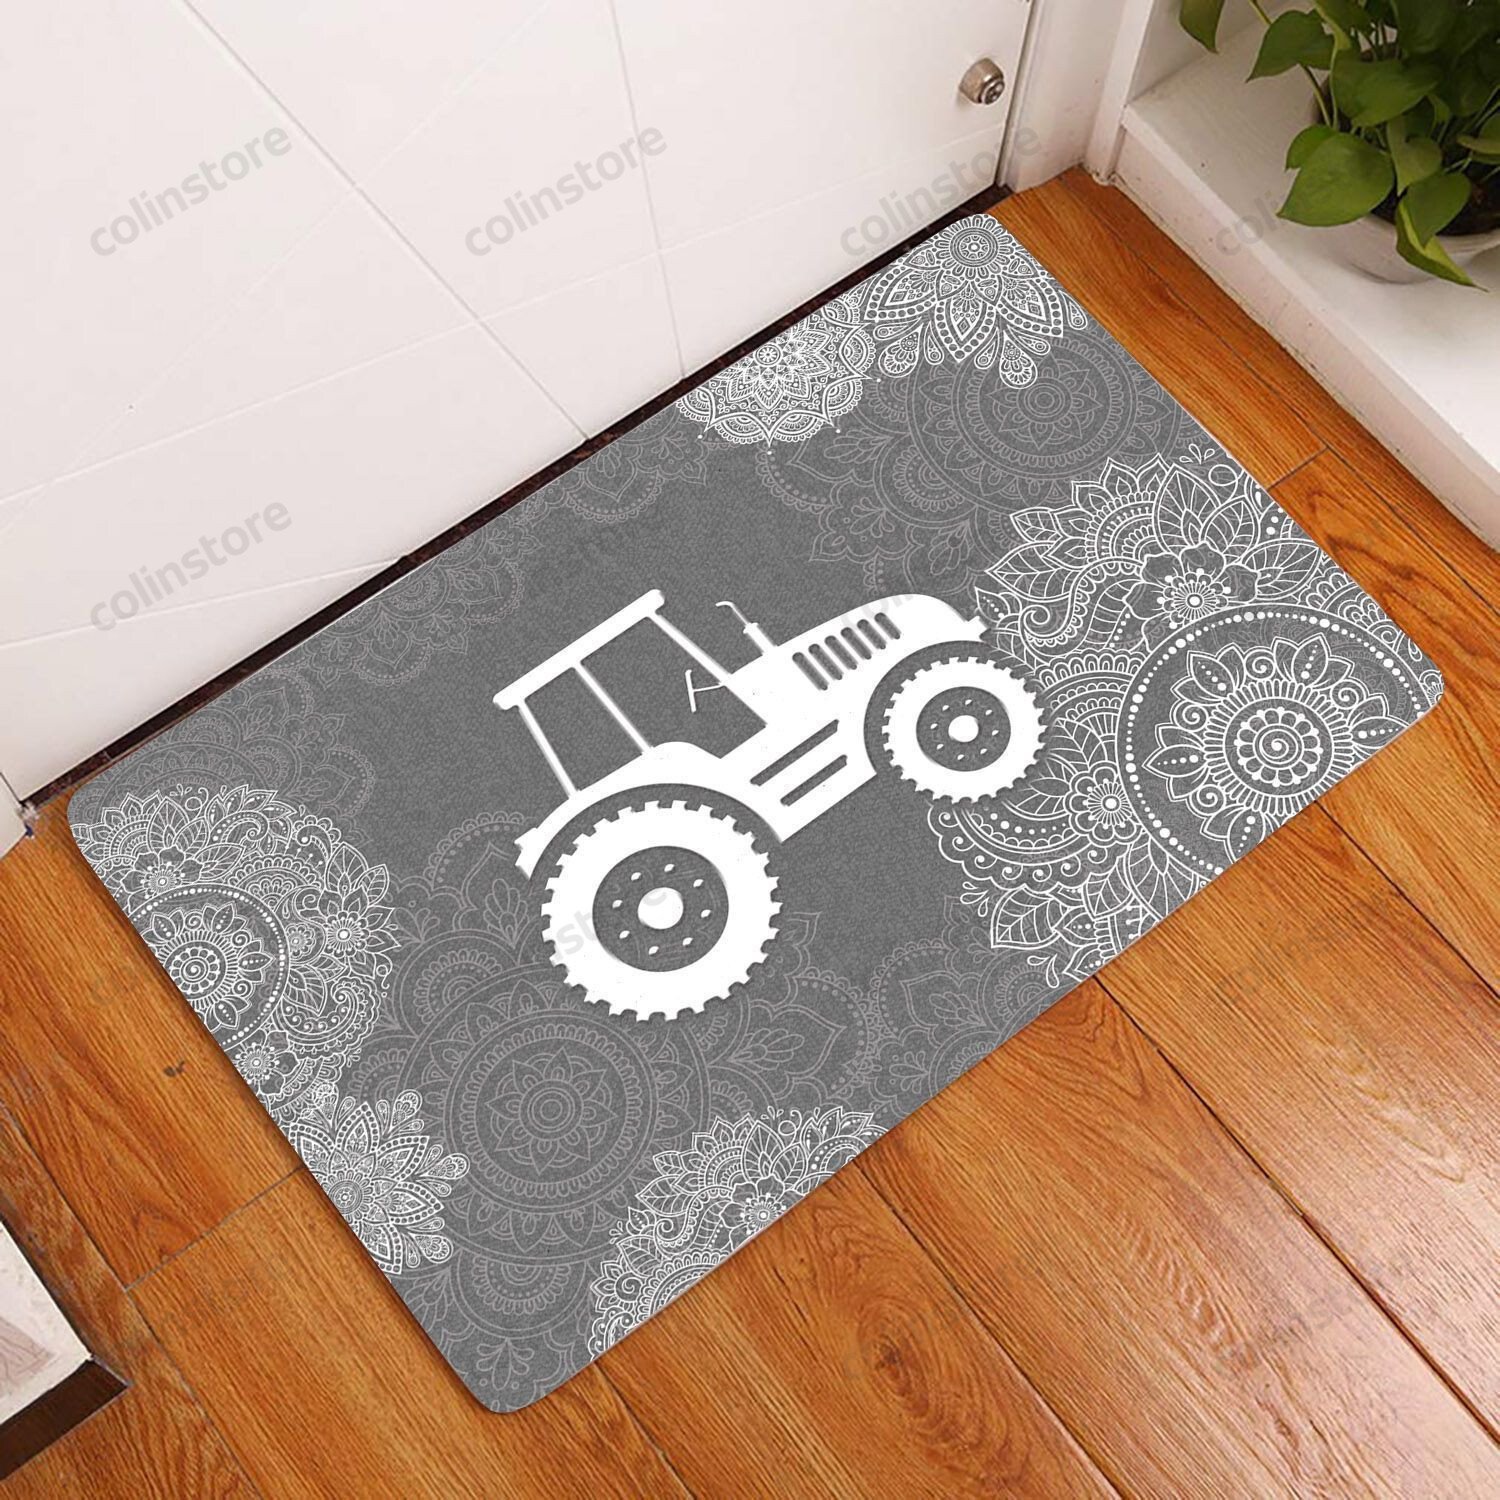 Amazing Farmer Doormat Welcome Mat